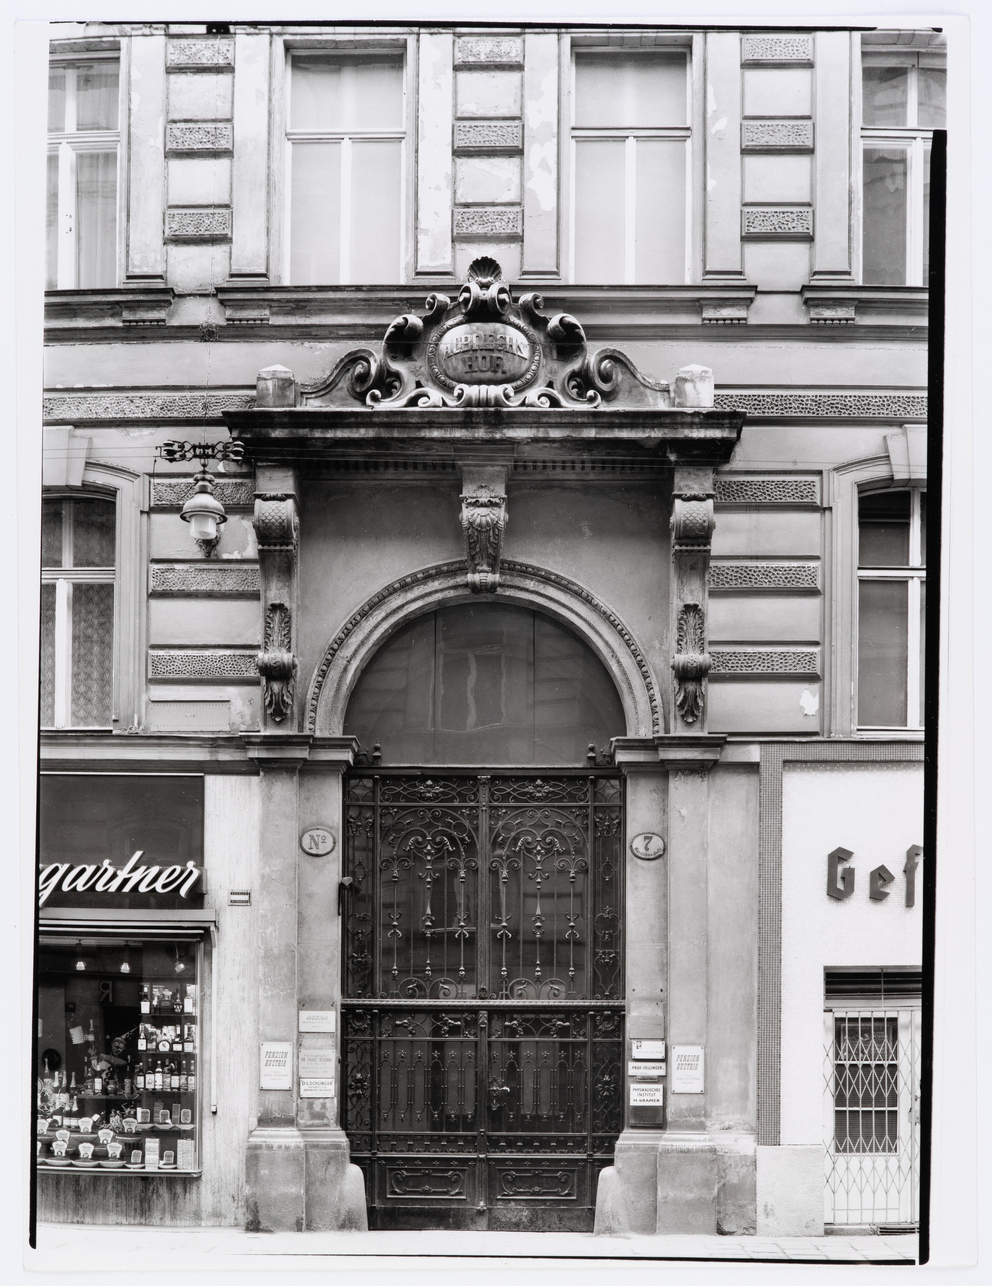 Fotodokumentation Ringstraße: 9., Garnisongasse 7, Wohnhaus, Portal ...